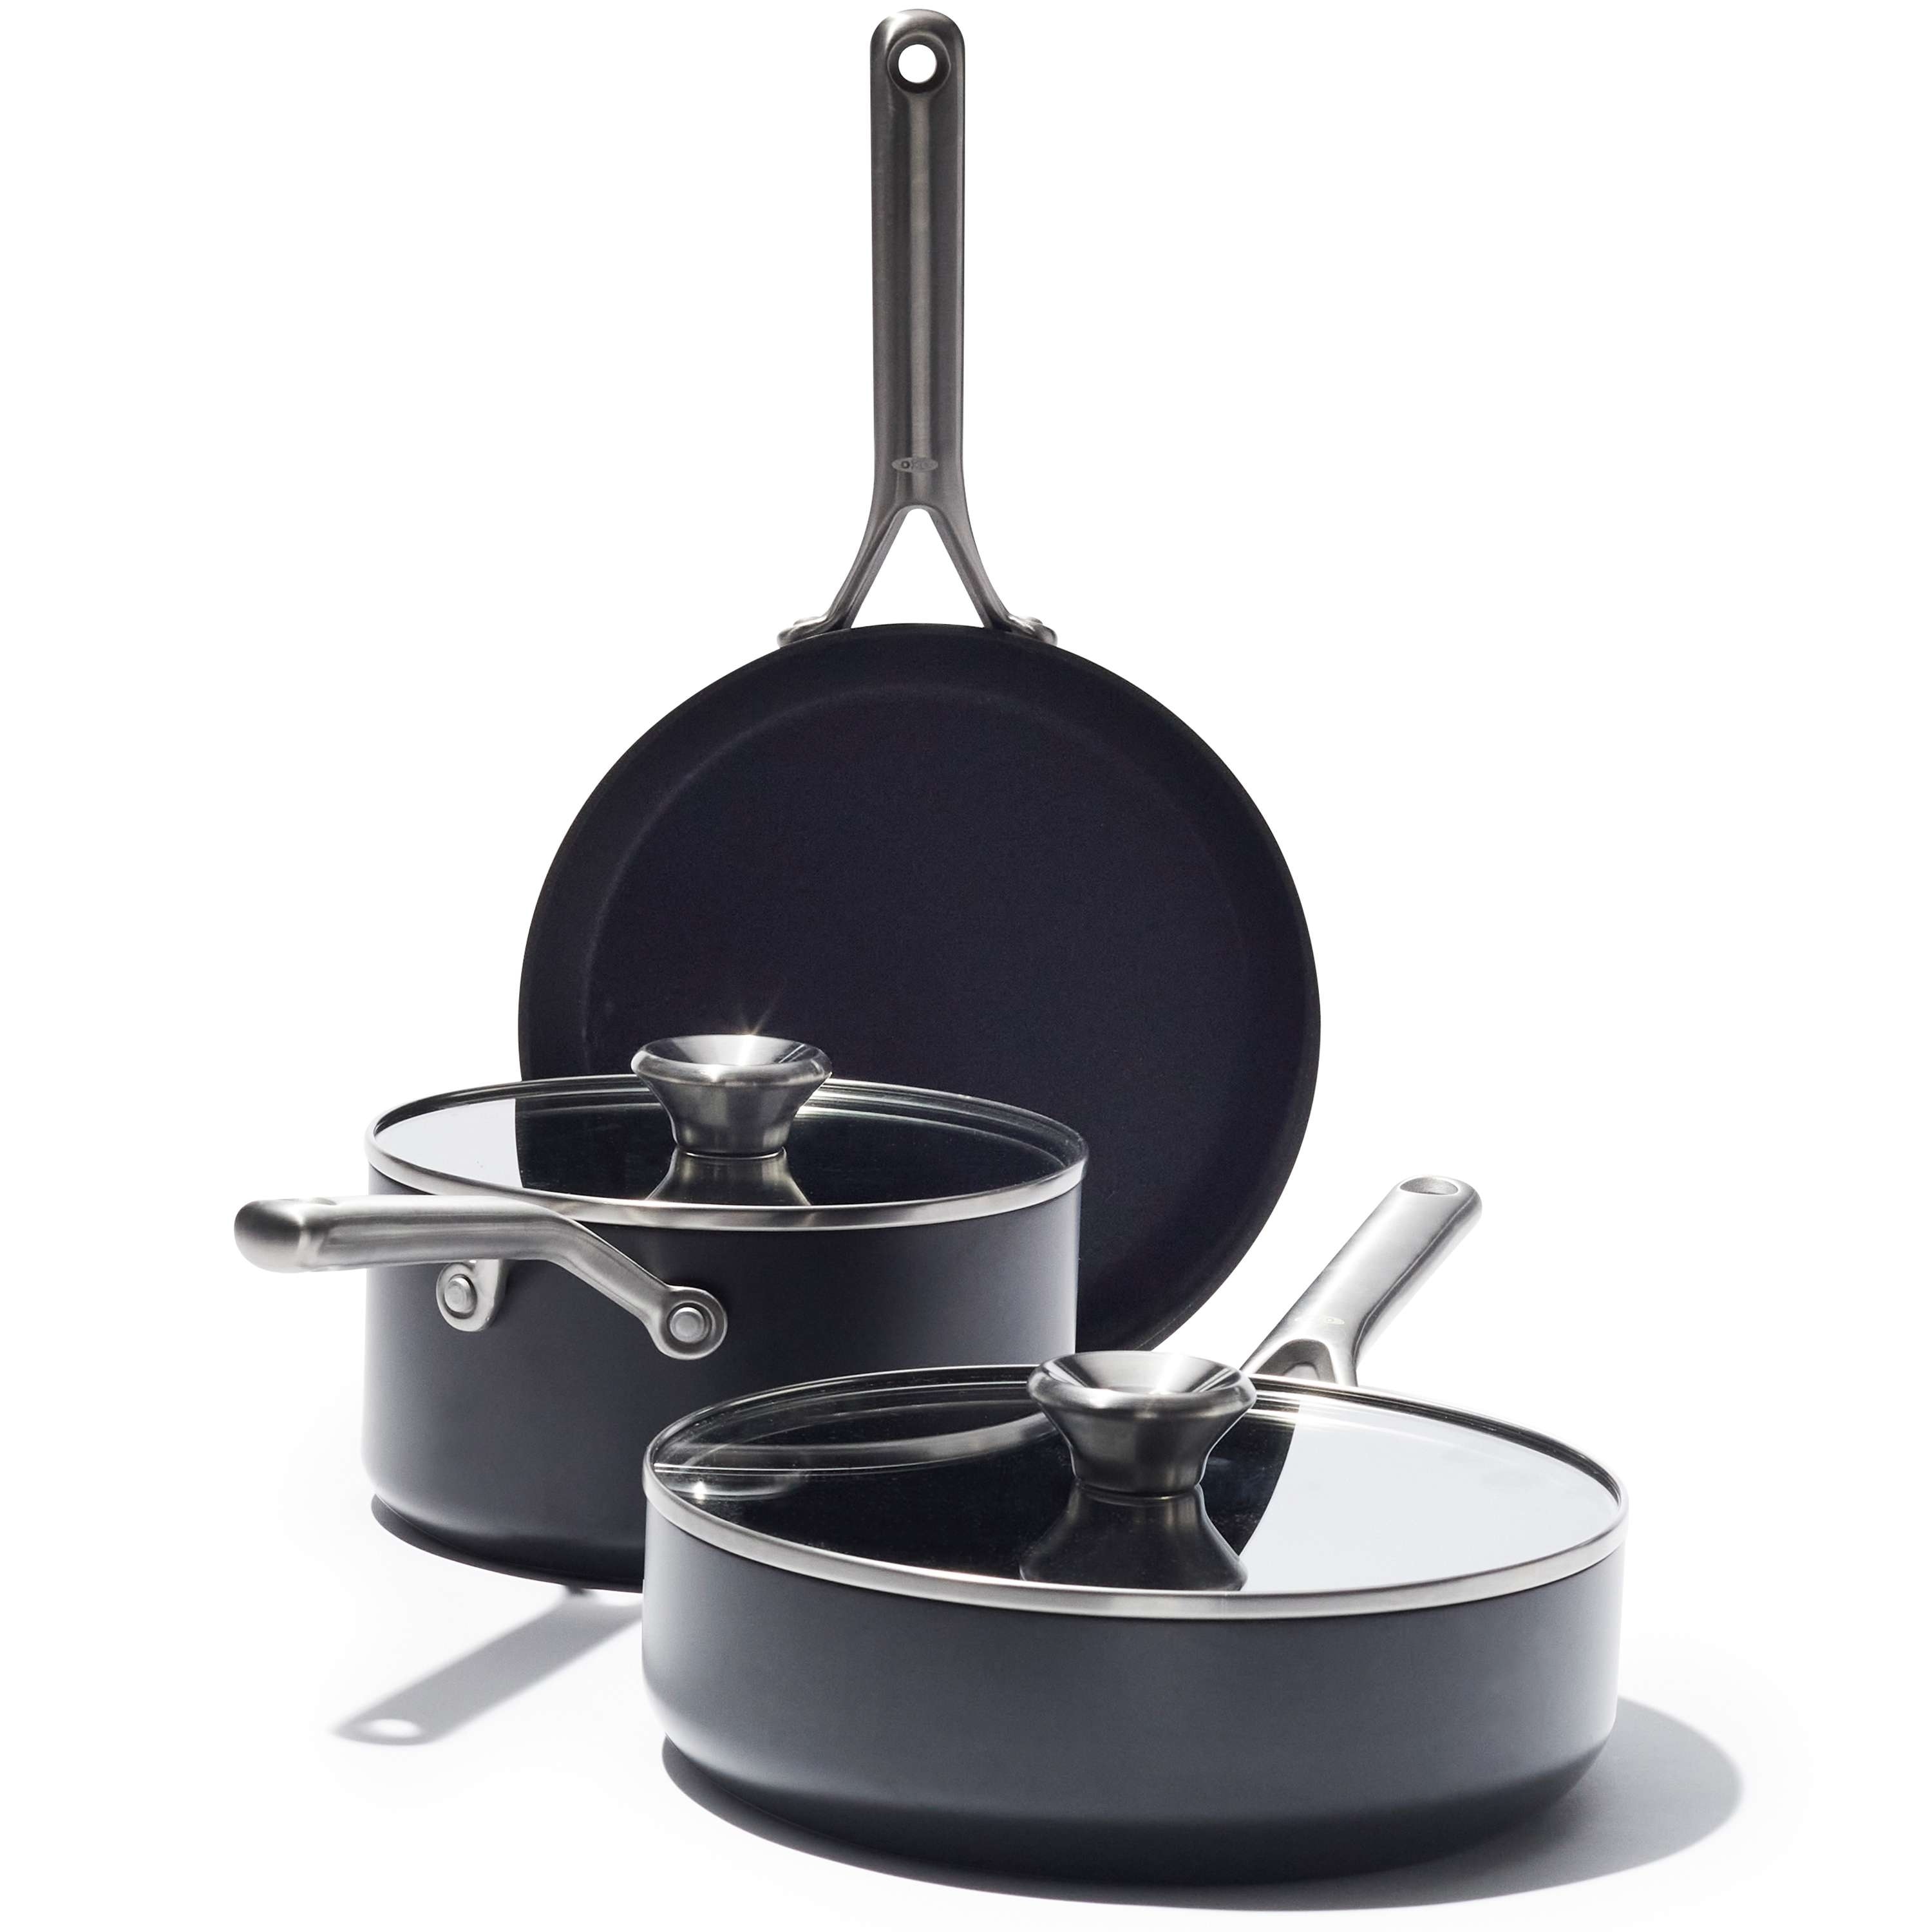 Denmark Tools Aluminum Non Stick Cookware 2.5 qt Saucepan Gray New